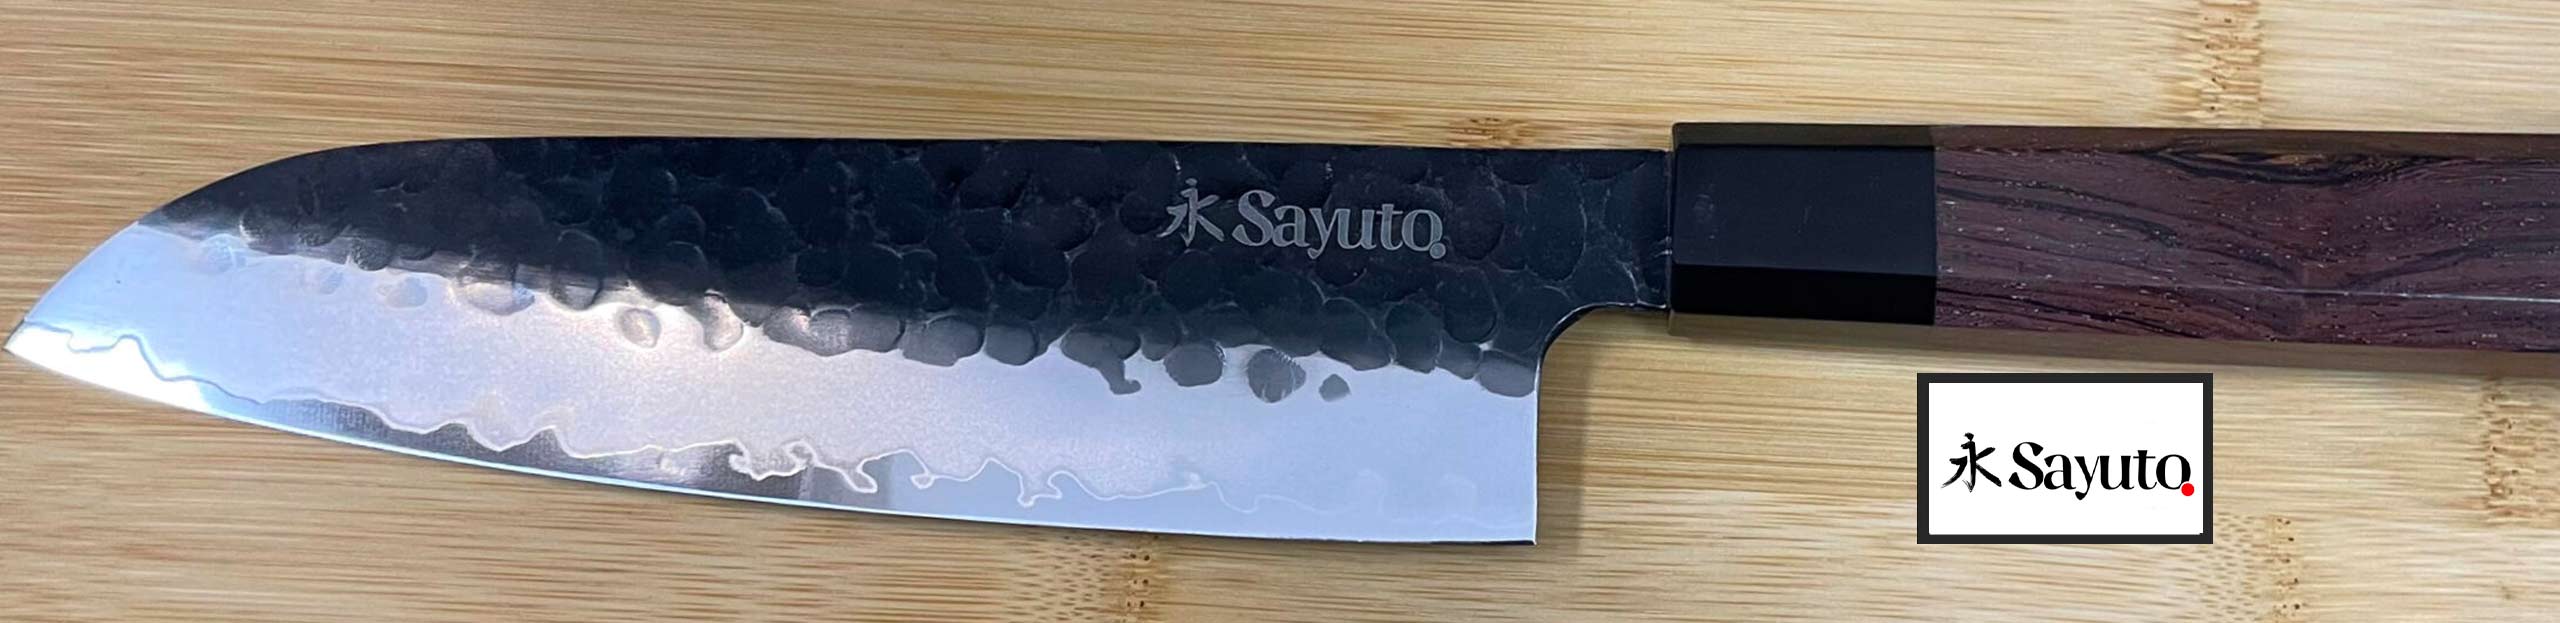 couteau japonais Sayuto